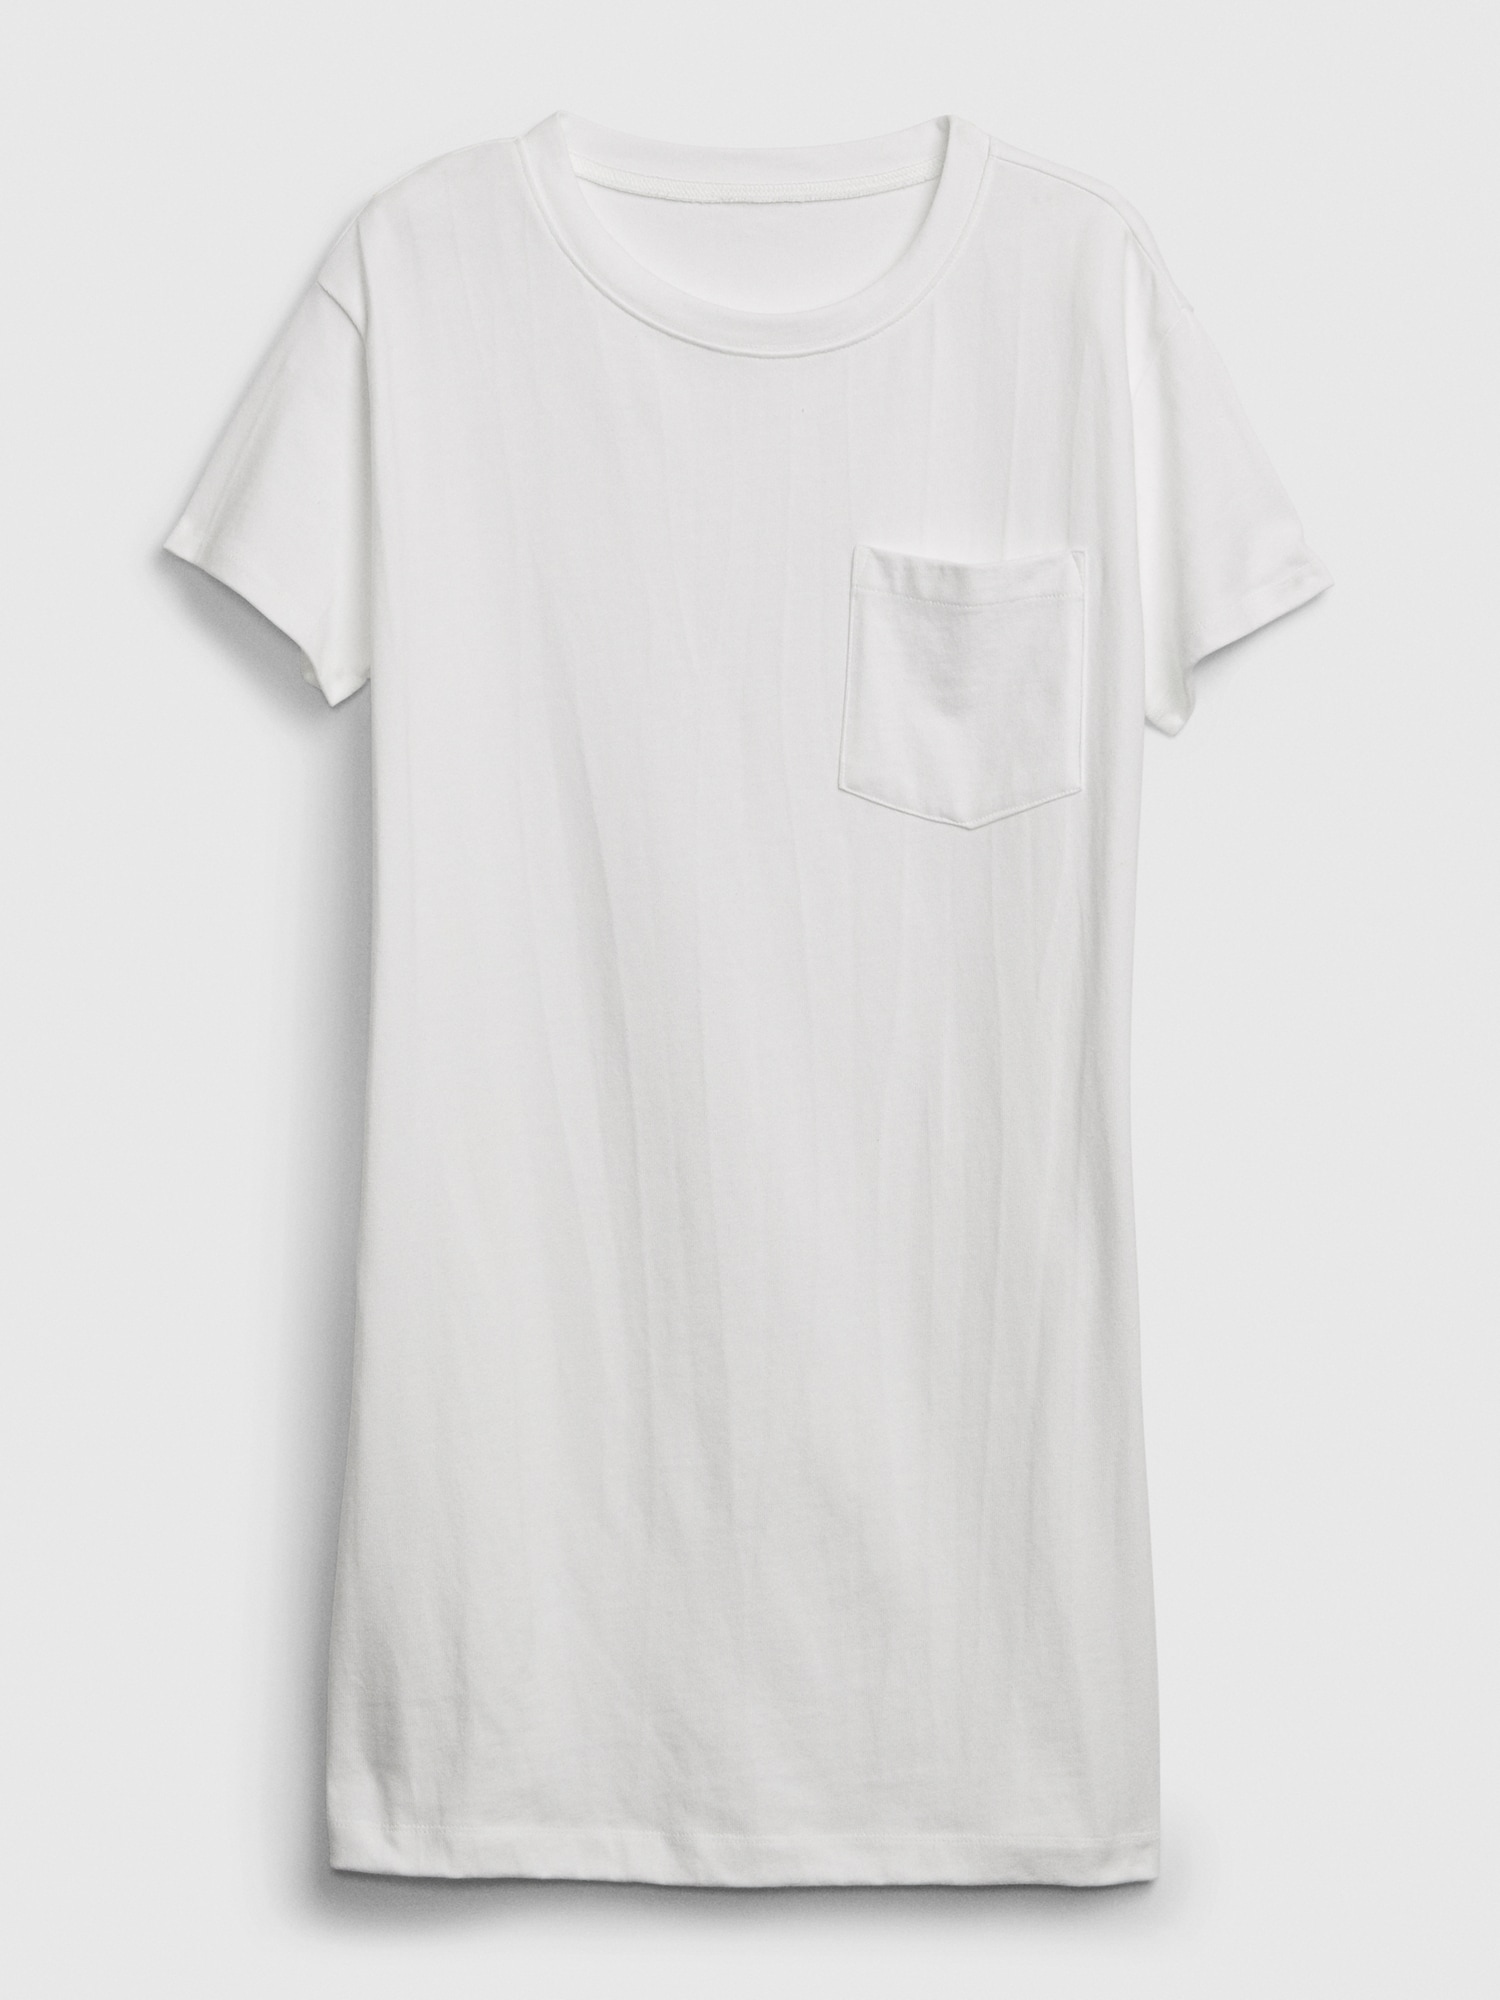 Pocket T-Shirt Dress | Gap